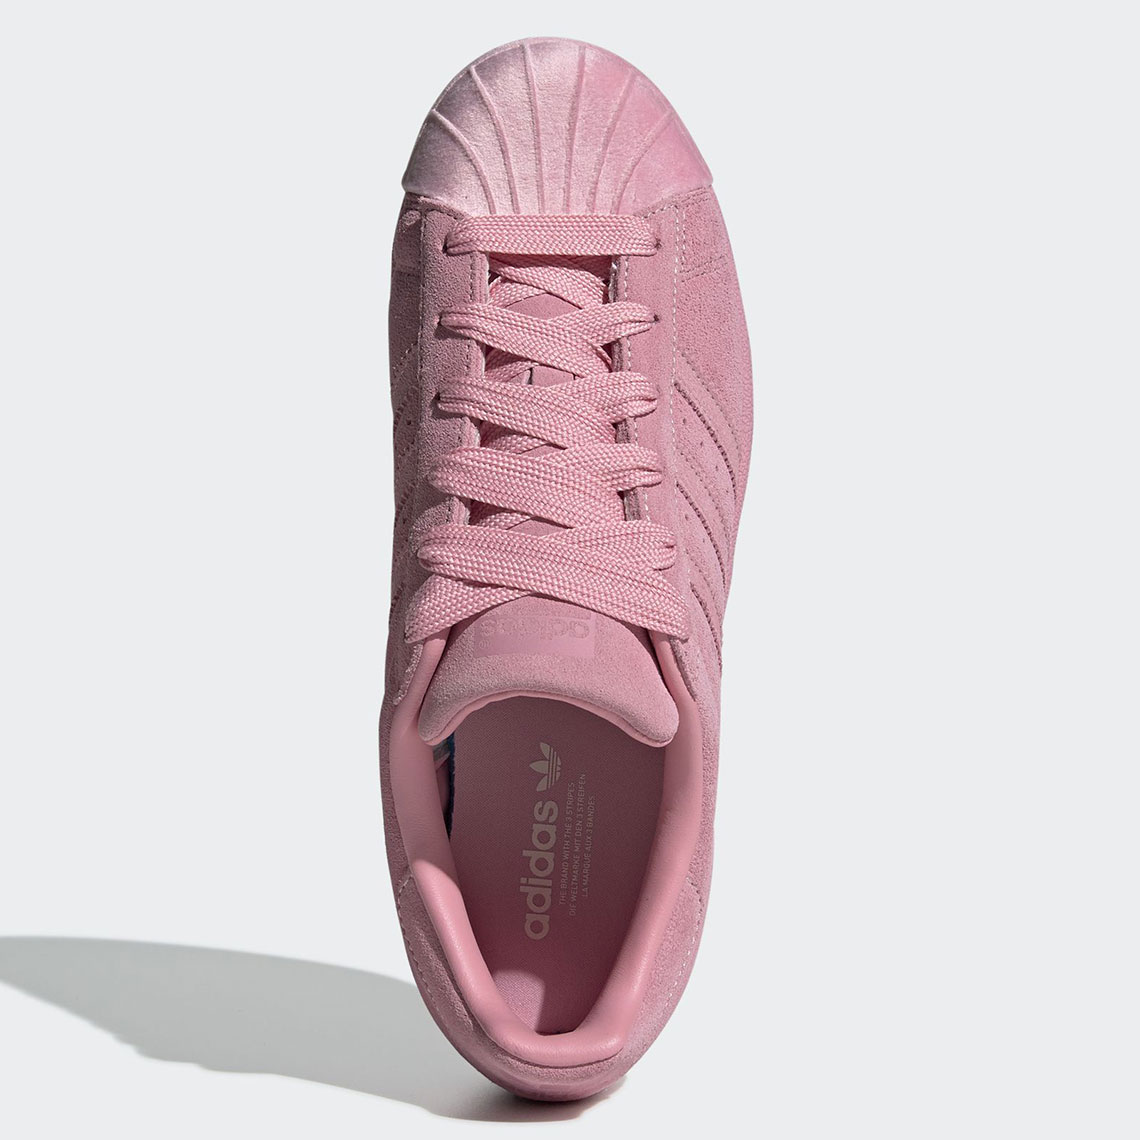 adidas Superstar Tonal Pack WMNS Release Info | SneakerNews.com